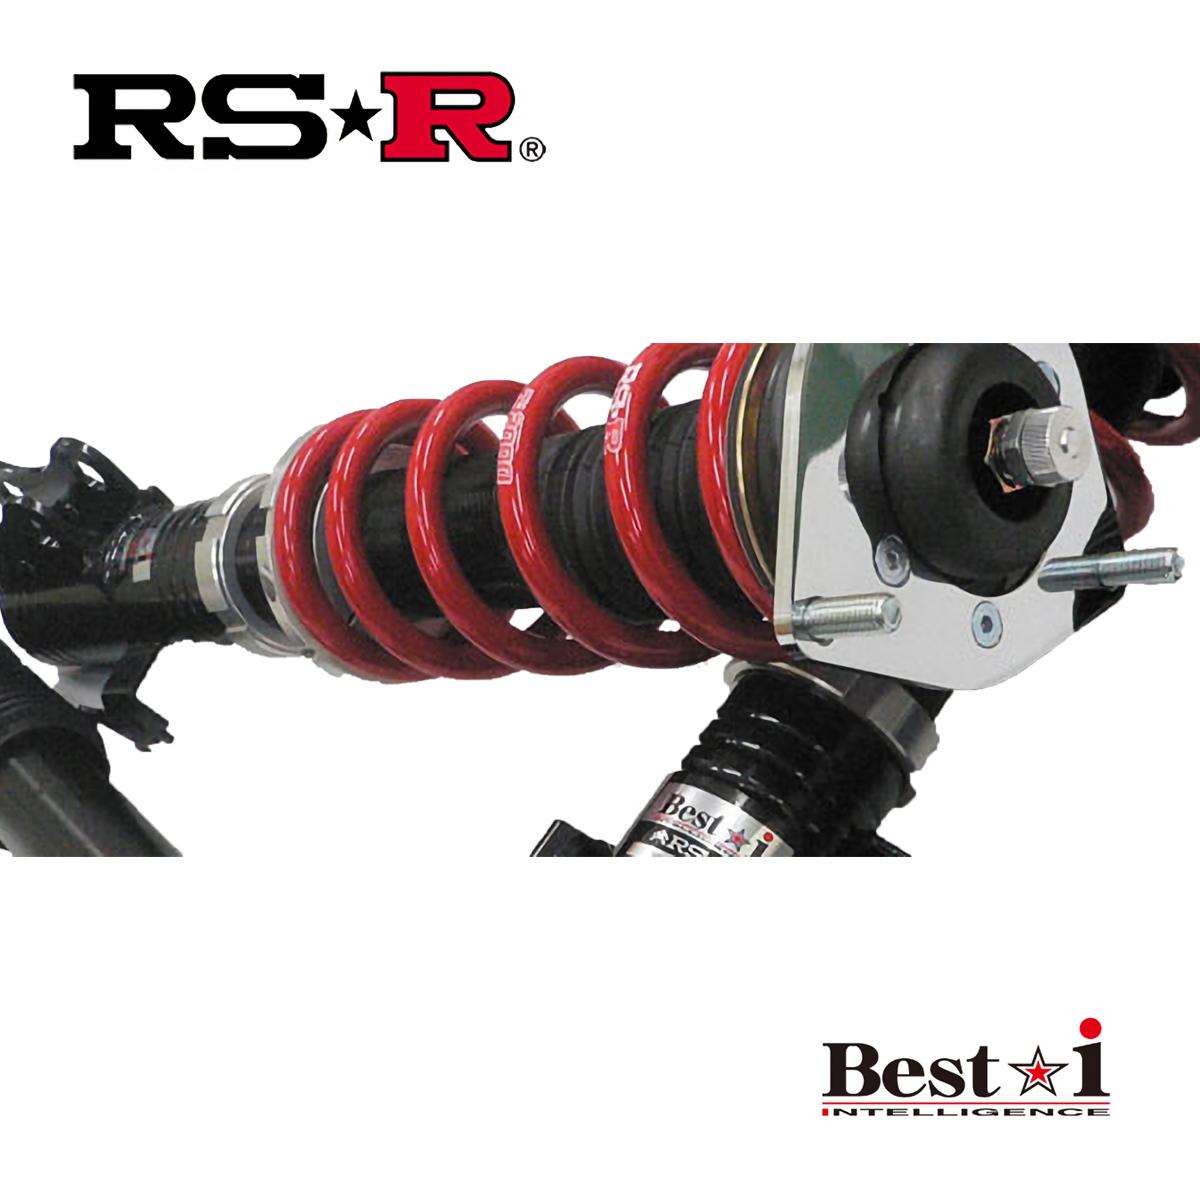 RSR C-HR ZYX10 車高調 リア車高調整:ネジ式/推奨バネレート仕様 BIT385M RS-R Best-i ベストi